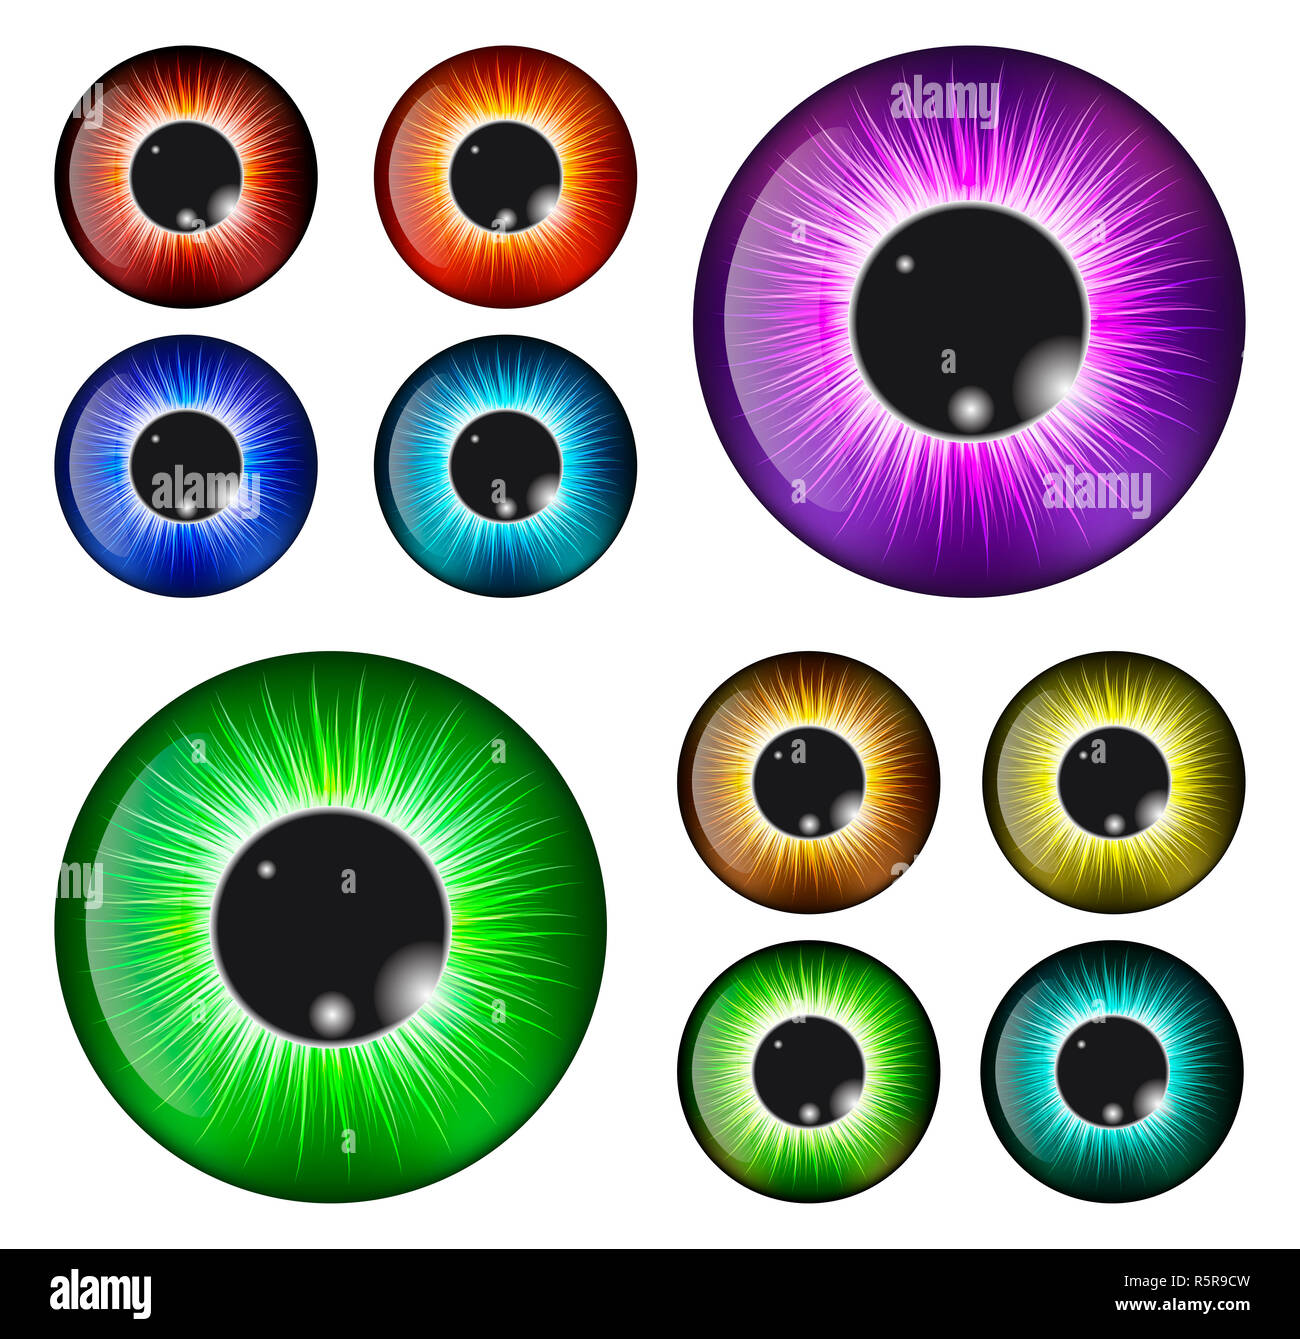 eye, pupil, iris, vector symbol icon design. Beautiful illustration  isolated on white background Stock Photo - Alamy